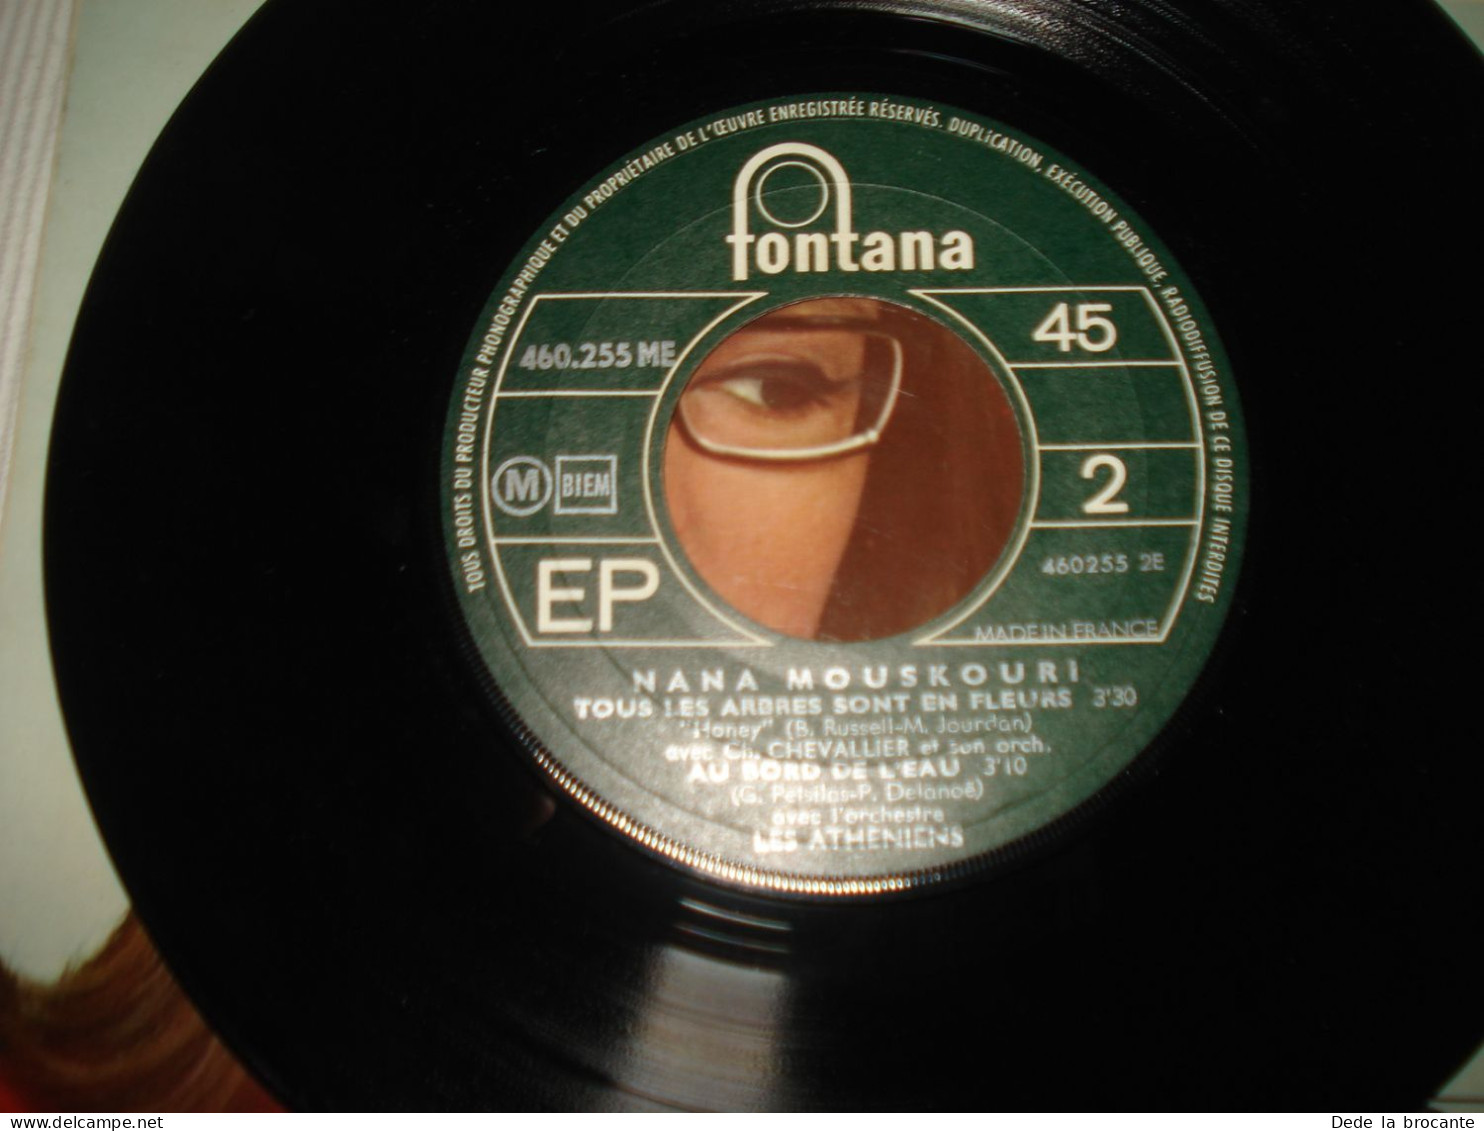 B13 / Nana Mouskouri – Coucourou Paloma - EP – 460 255 ME - Fr 1968  NM/NM - Speciale Formaten